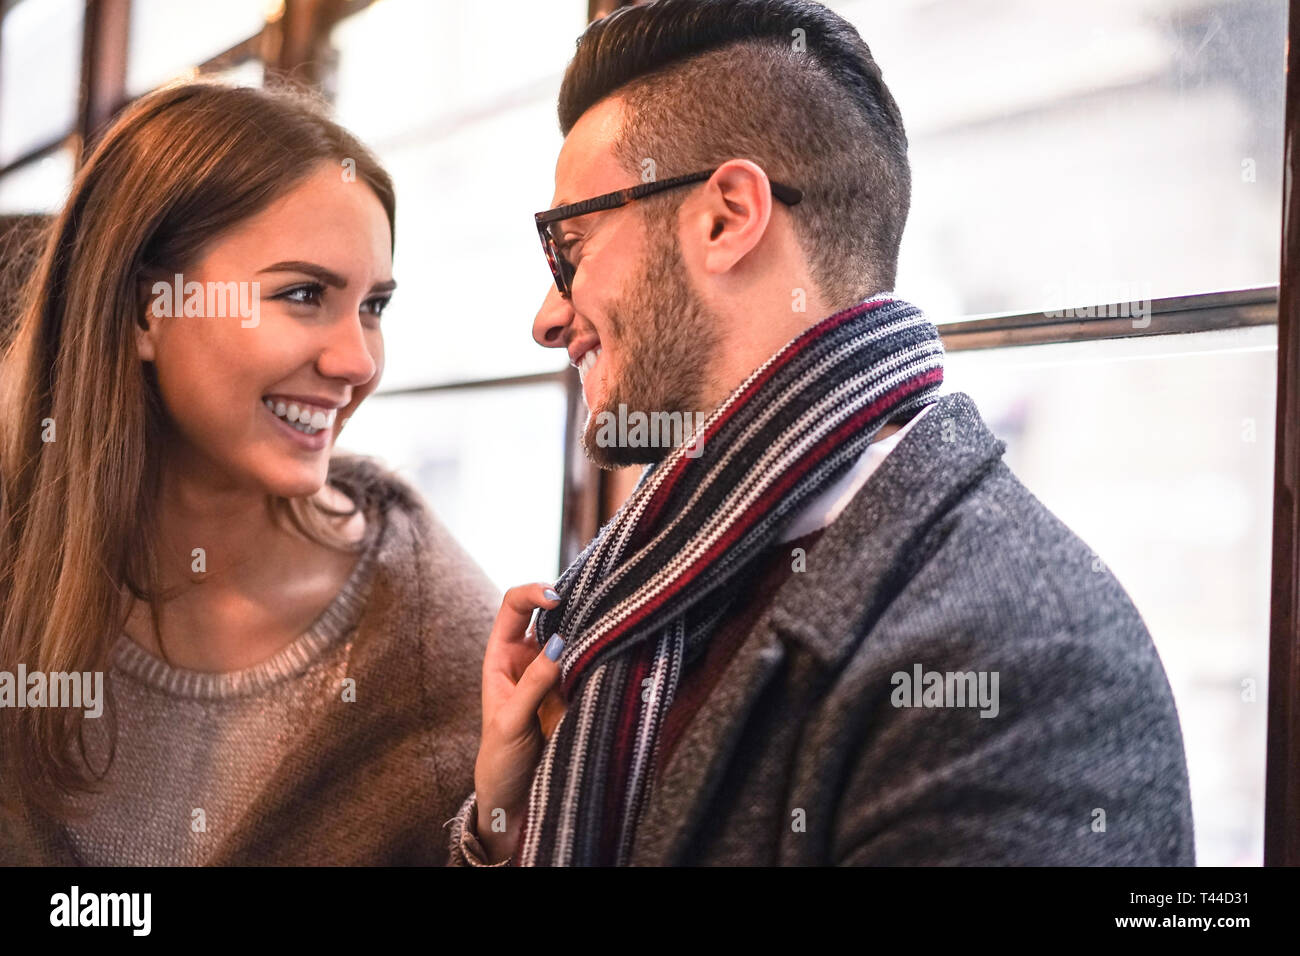 Glückliches Paar lachend, während sie einander im Bus - junge schöne Frau ihrem Freund durch Ziehen Schal neben ihr - Liebe, romantische Konzept Stockfoto